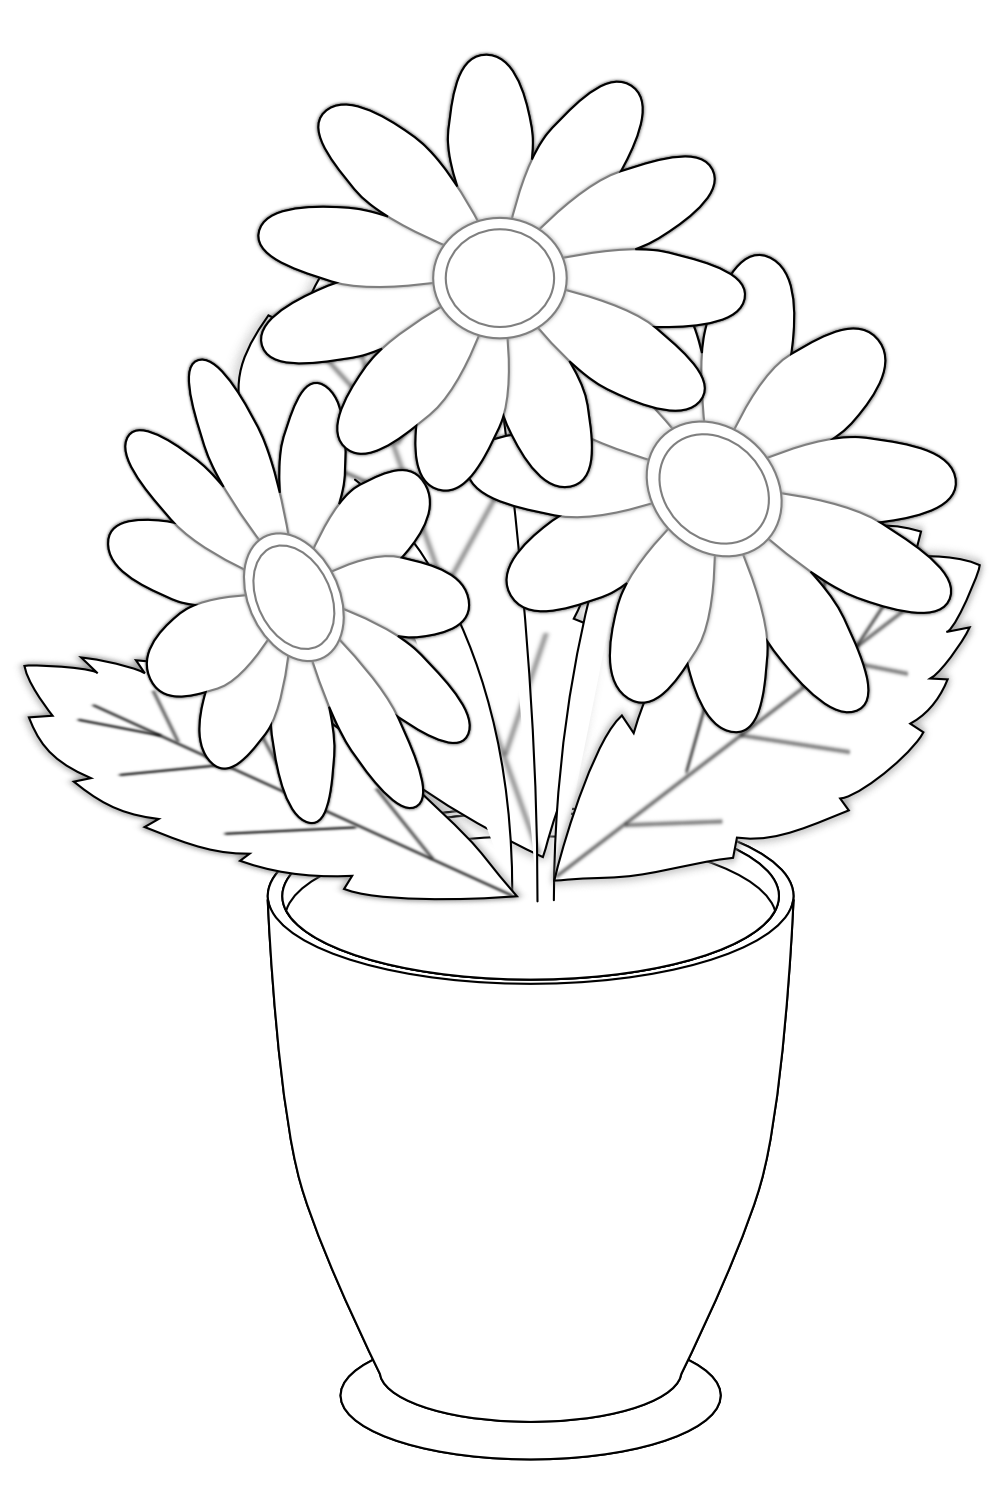 Flower vase clipart black and white - ClipartFox